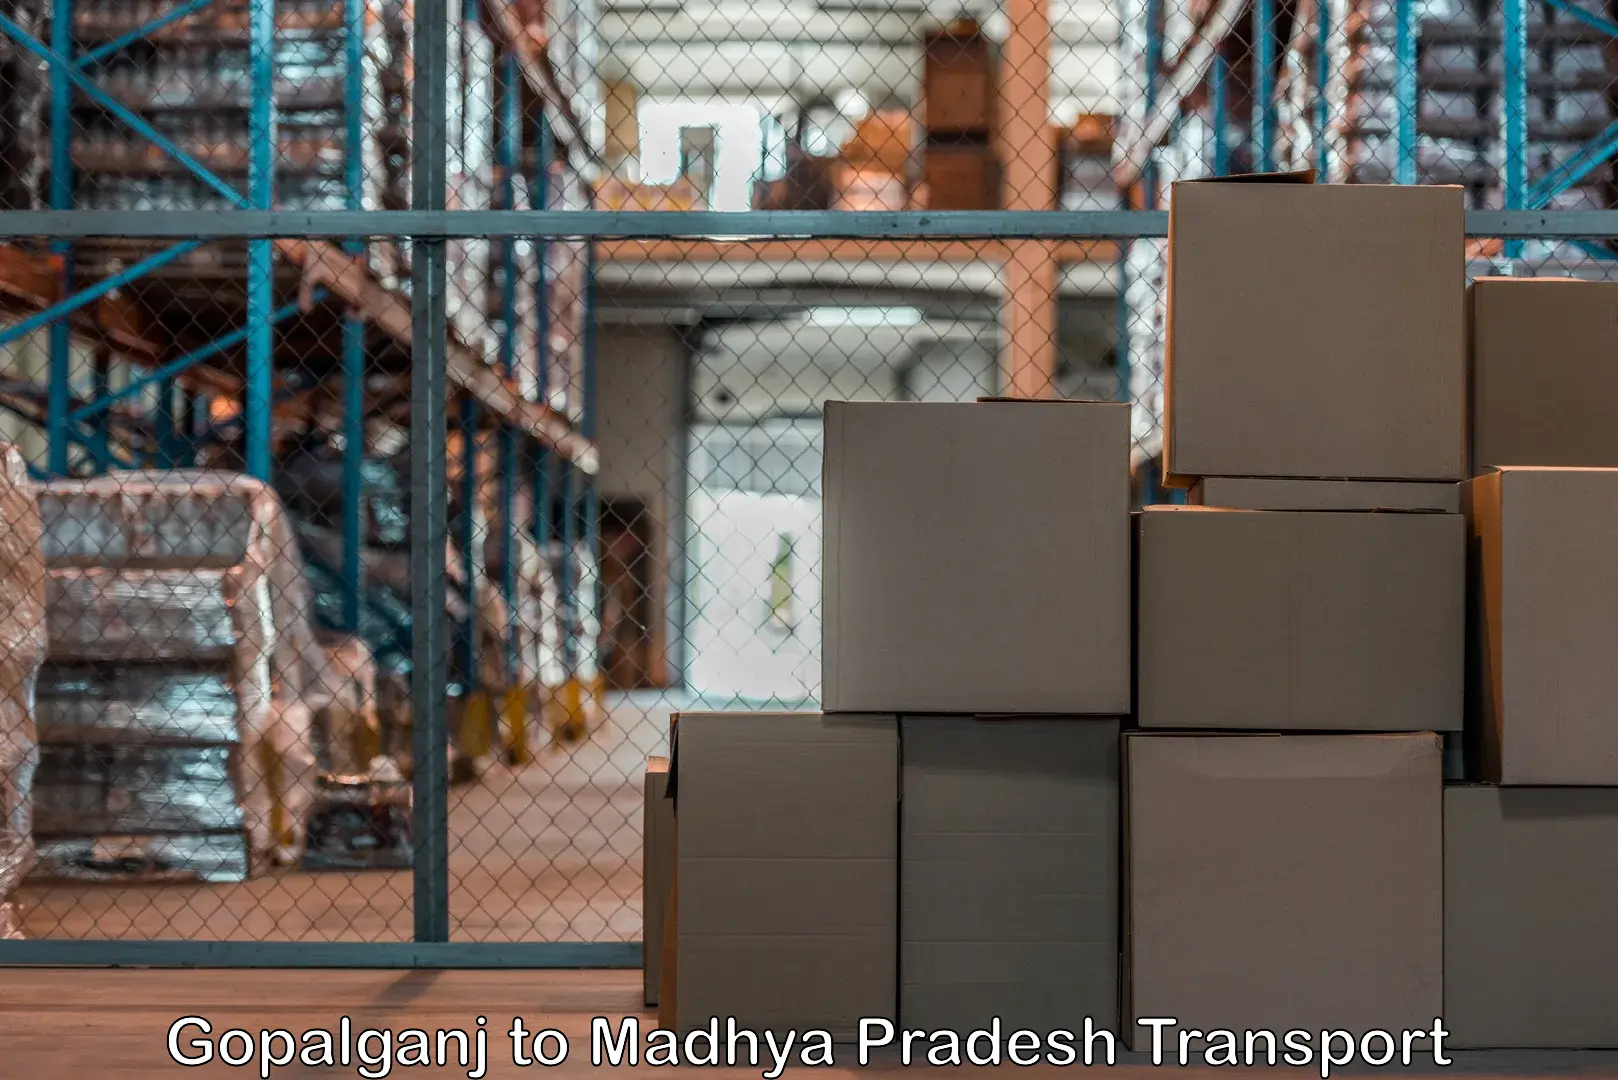 Commercial transport service Gopalganj to Madhya Pradesh